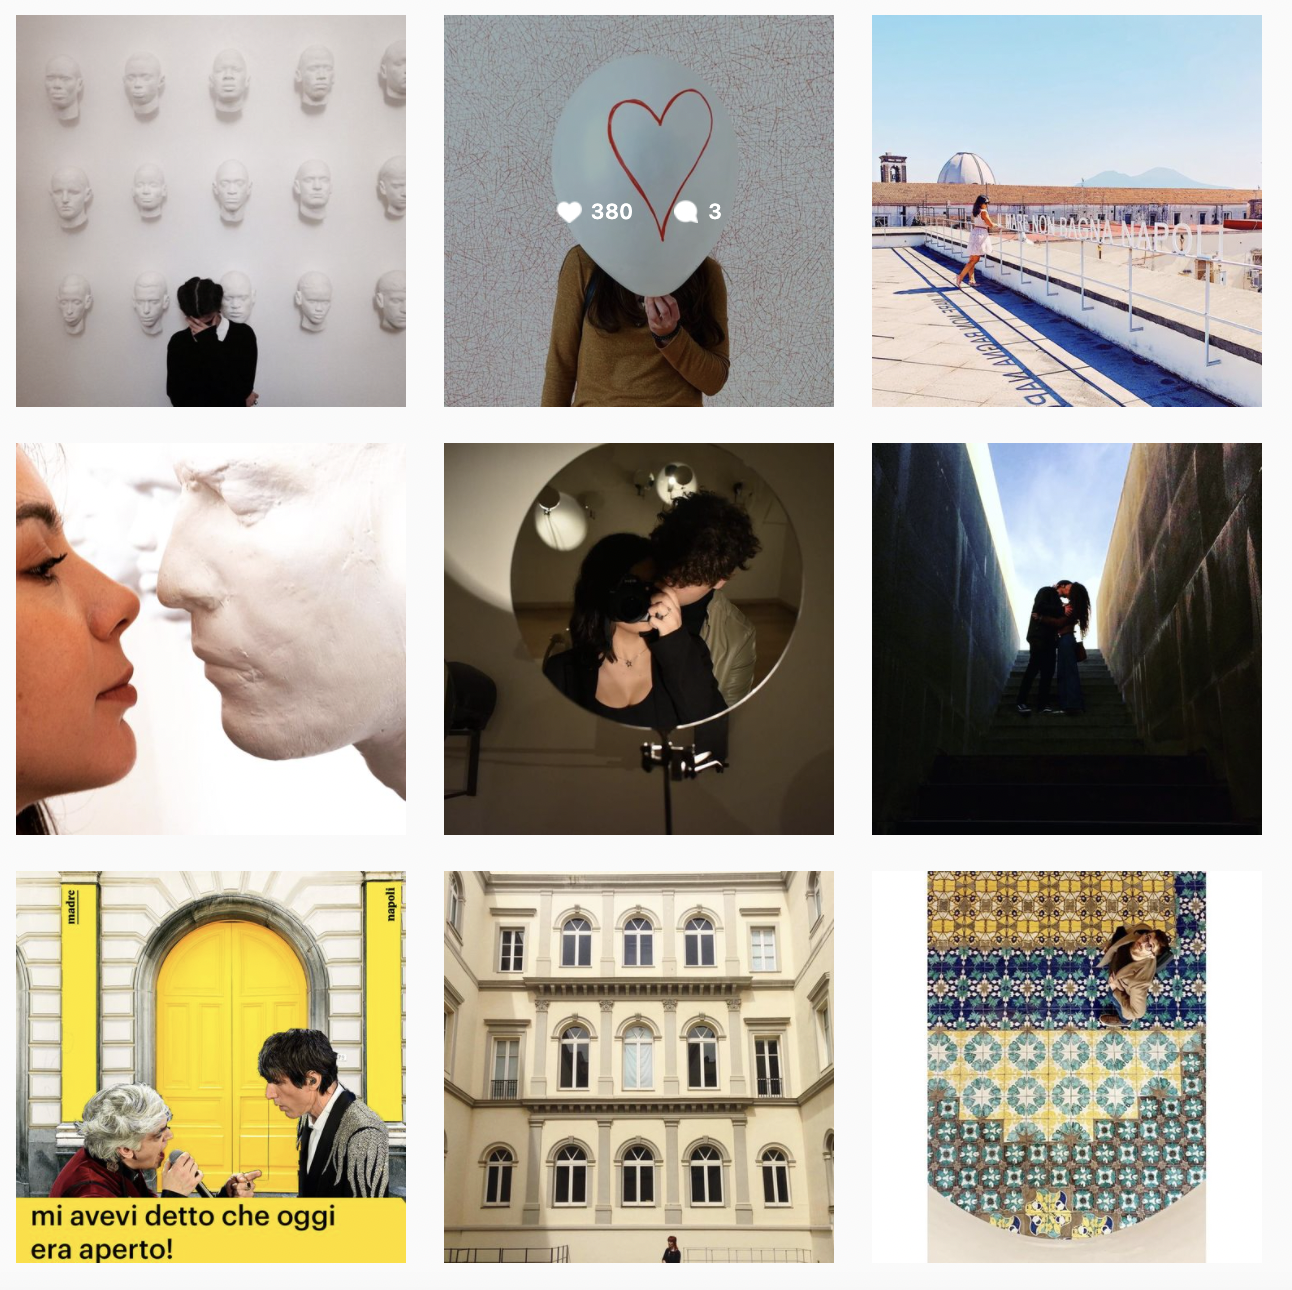 Album collettivo del museo Madre su Instagram